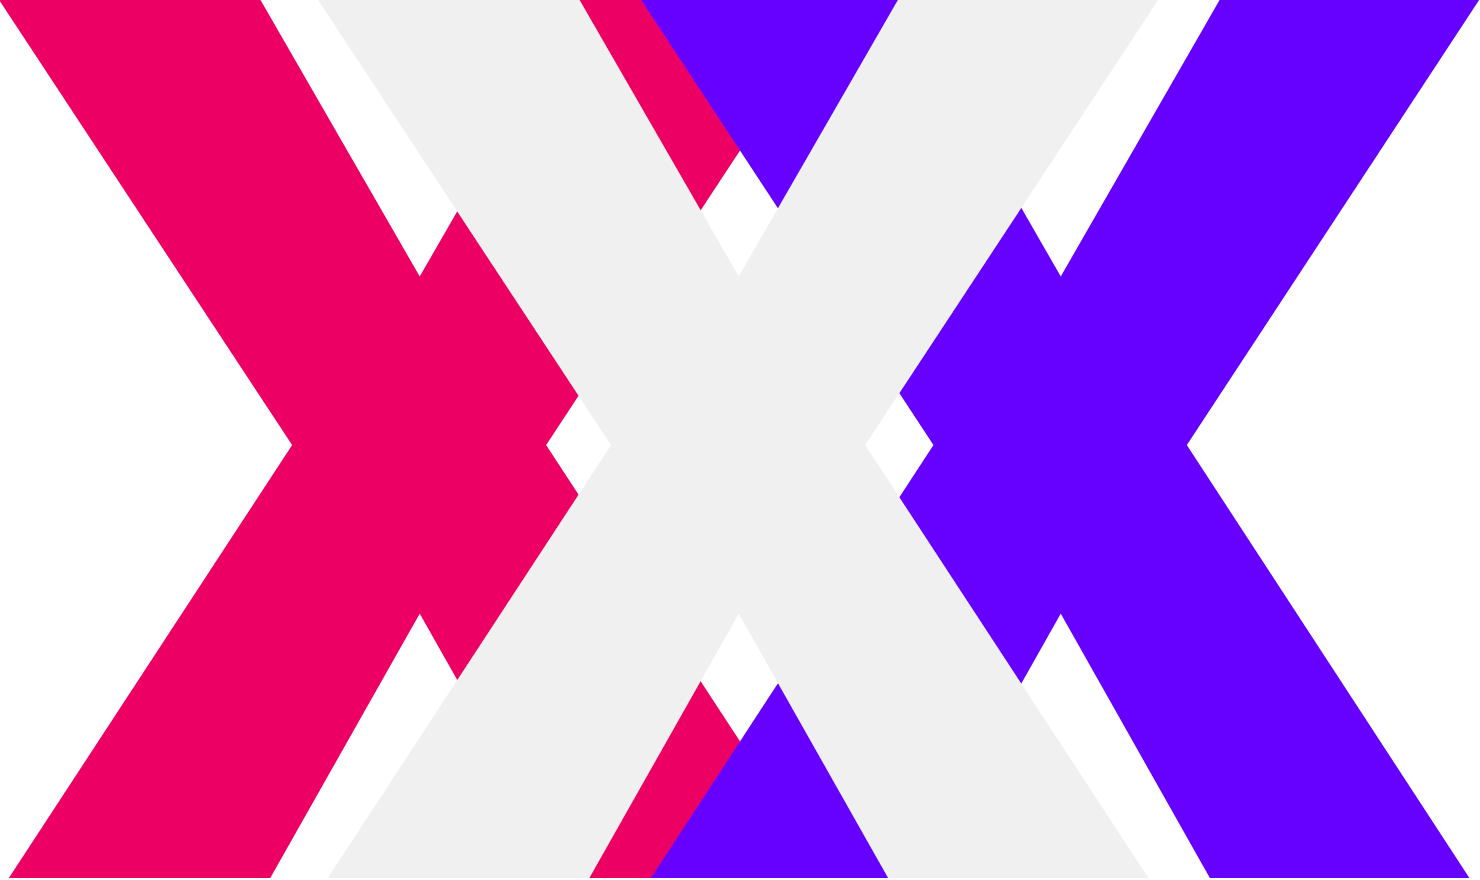 X-Models